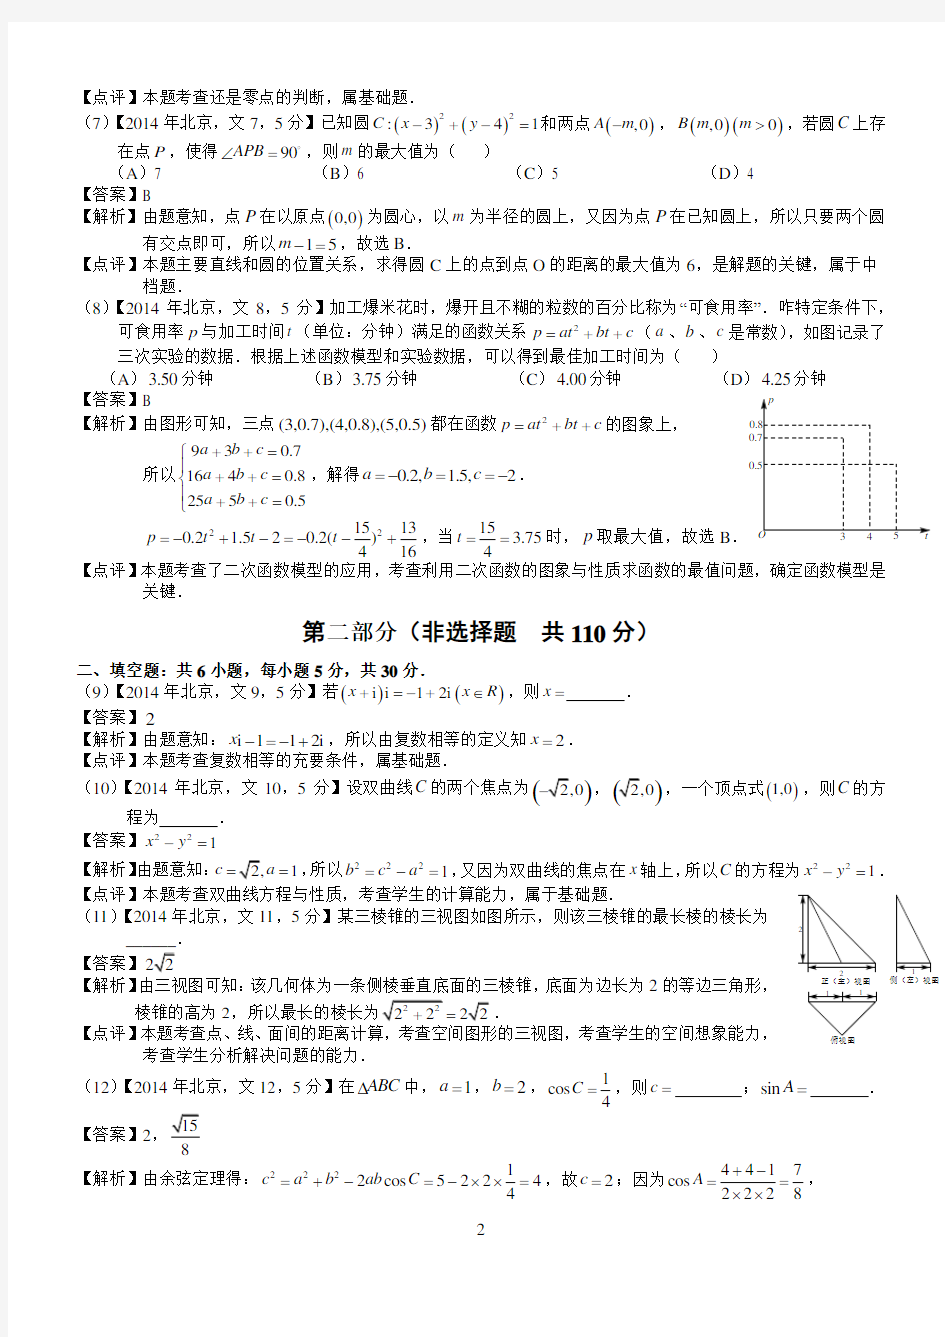 2014年高考北京文科数学试题及答案(word解析版)